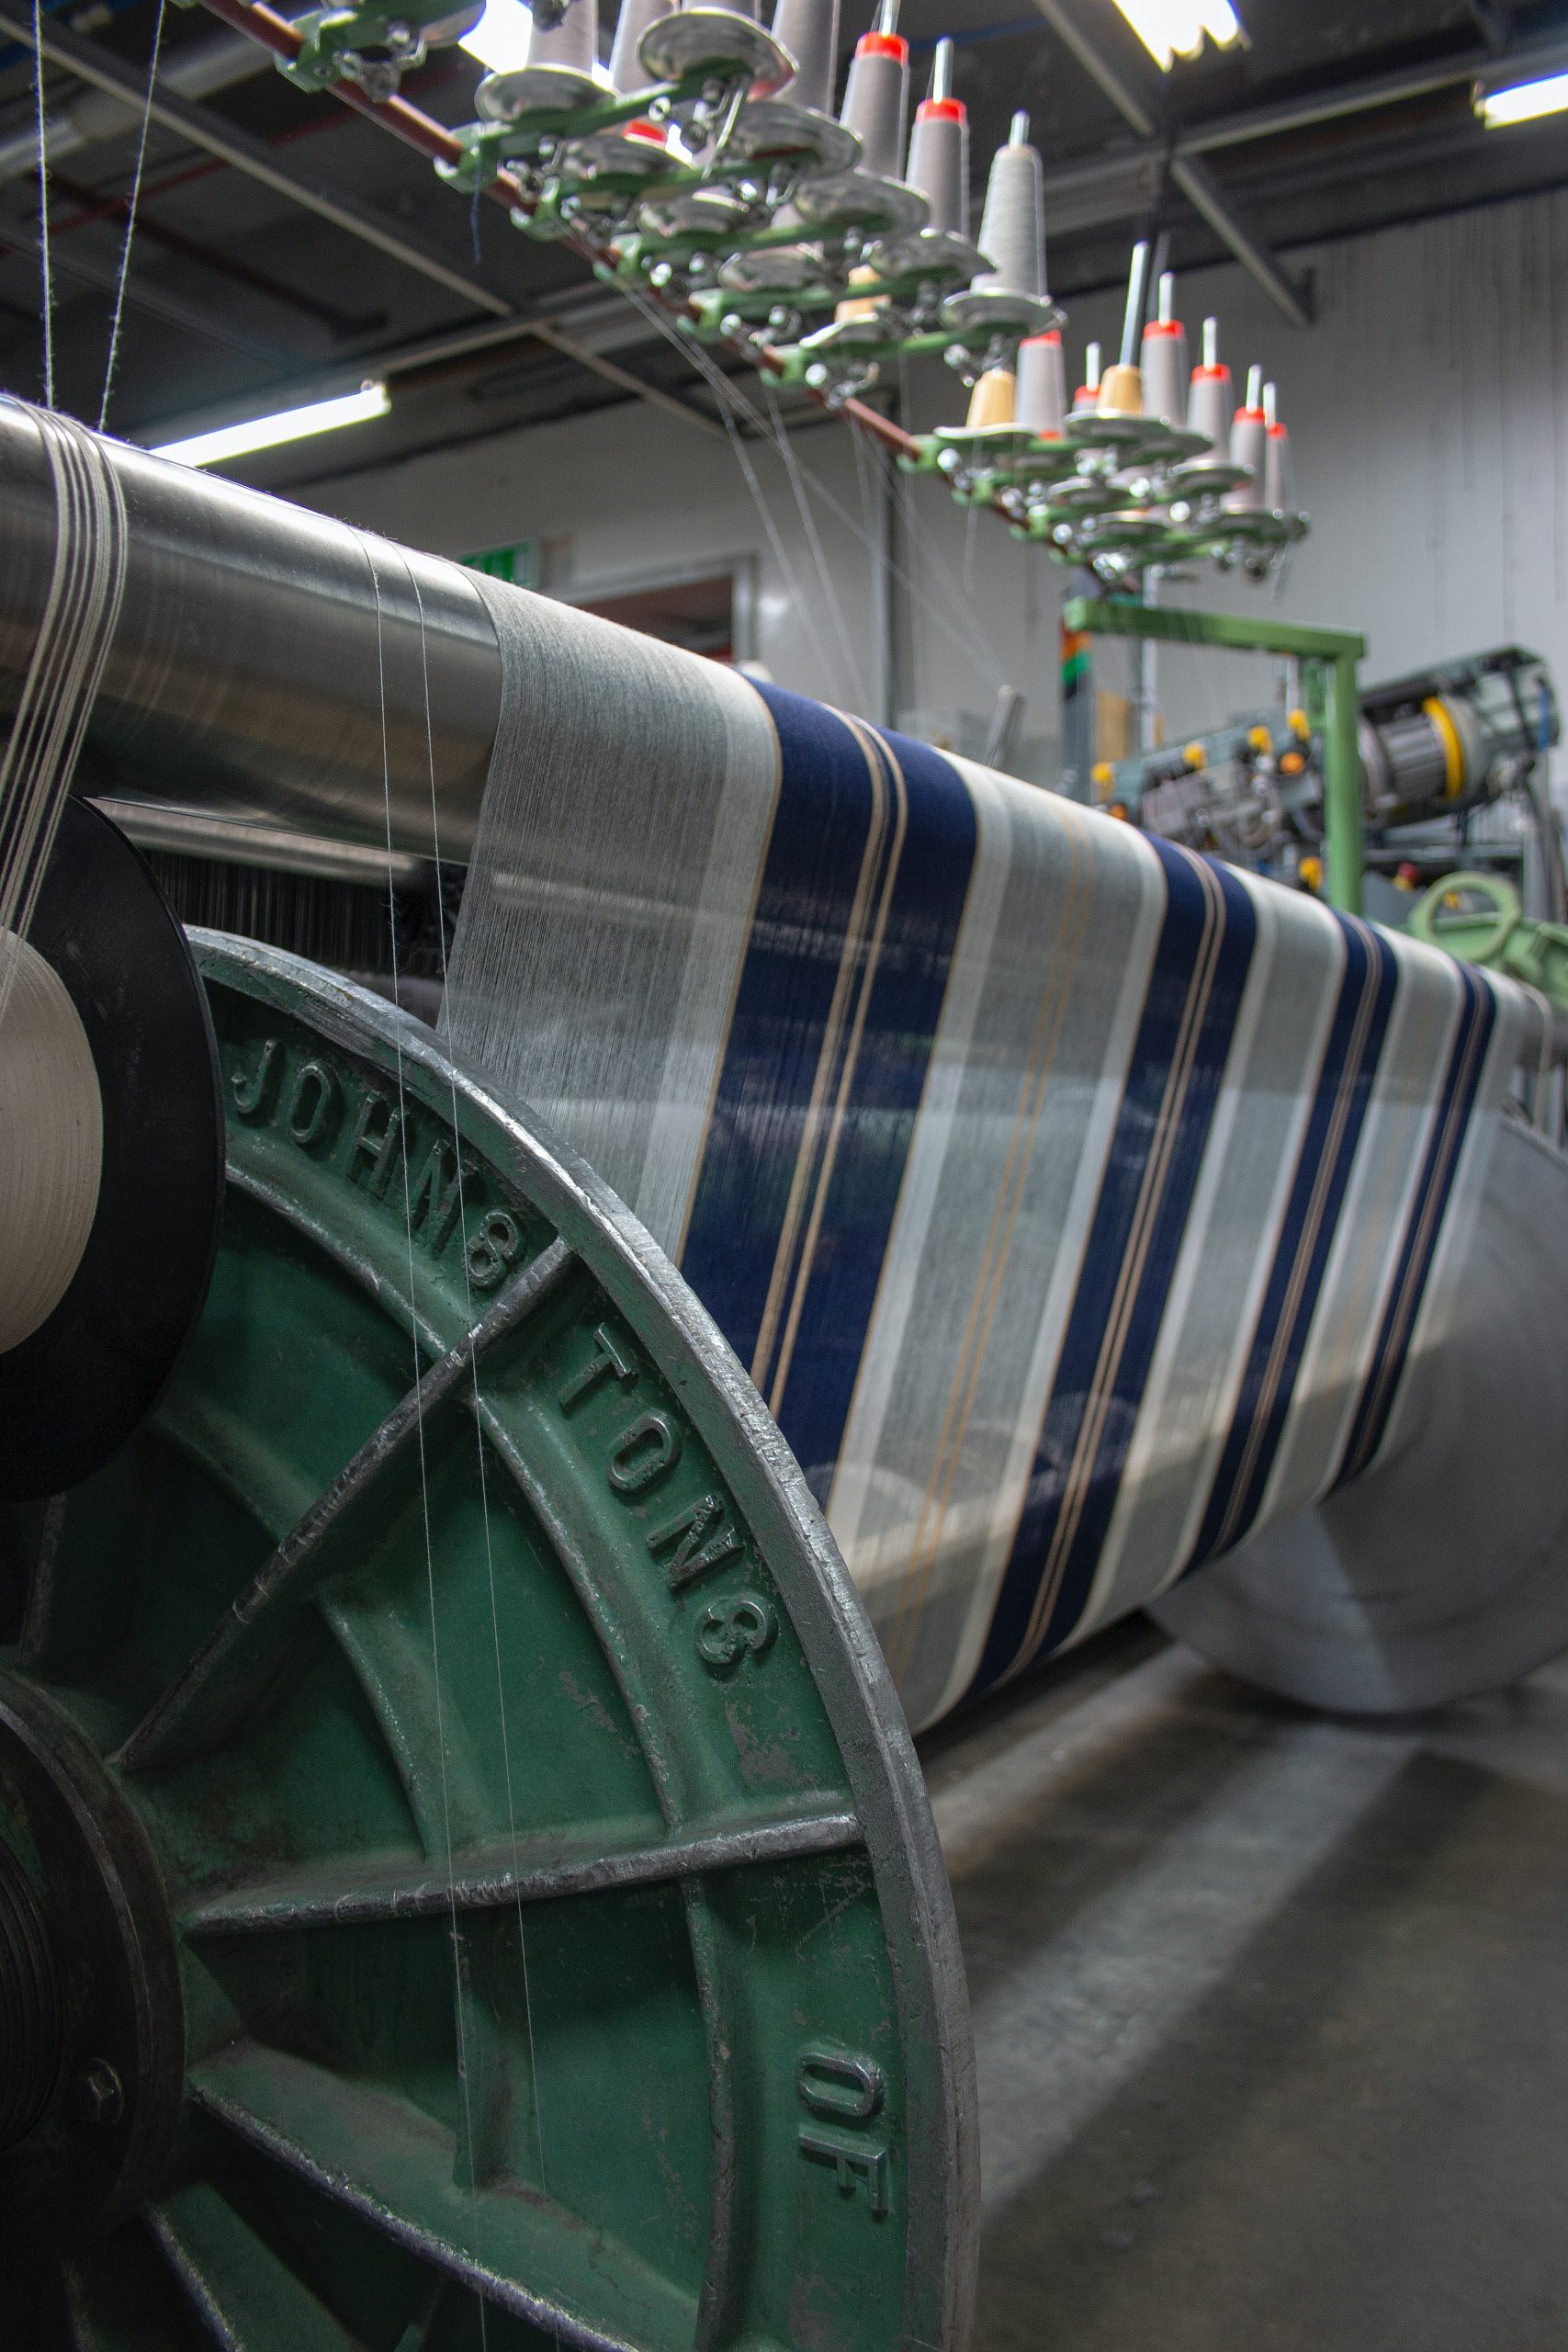 Tekstil Nedir? Tekstil Lifi Nedir ve Doğal Olan Lifler Hangileridir?